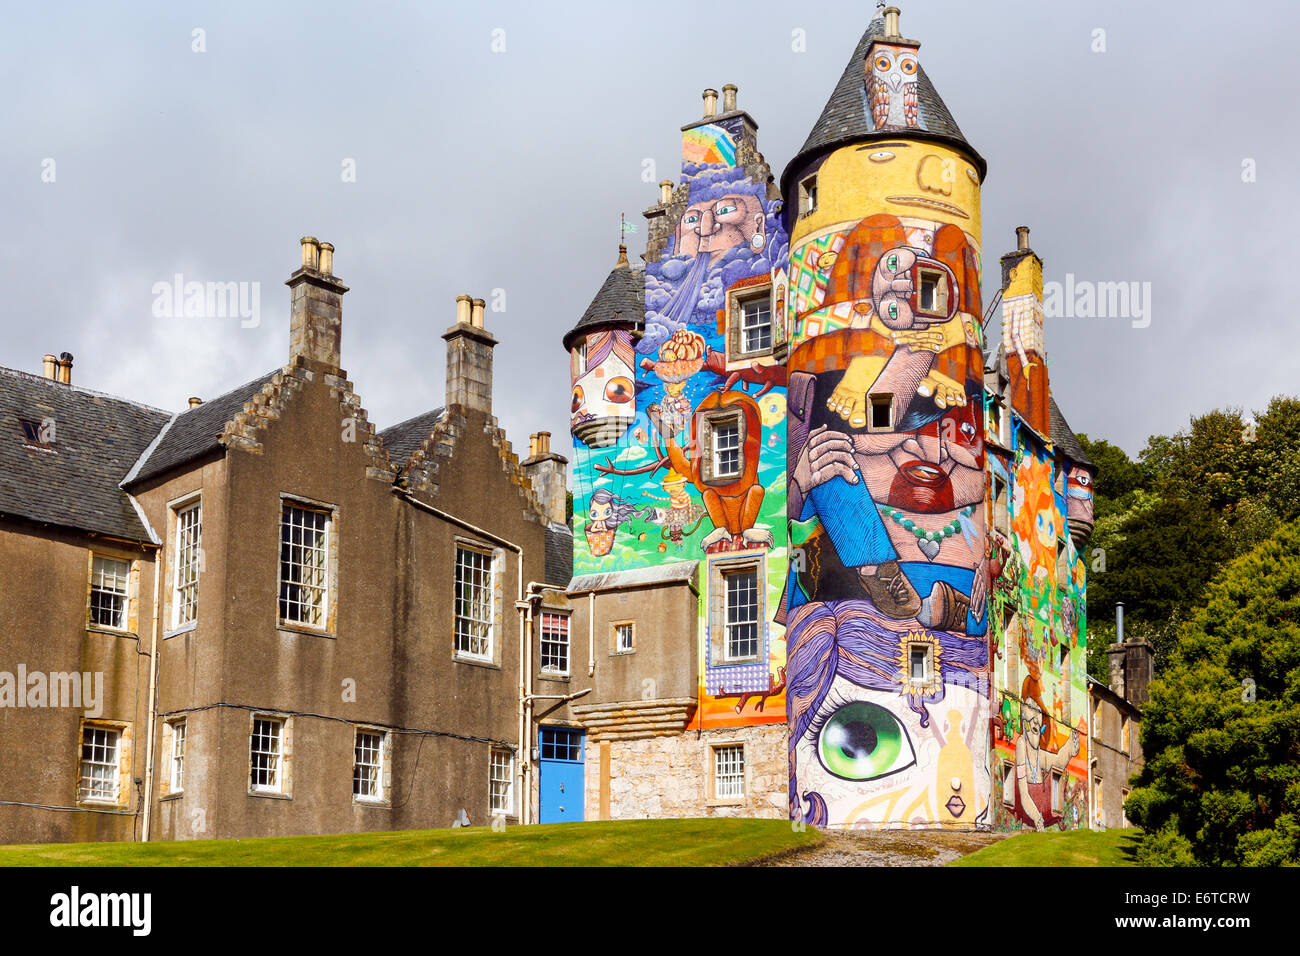 Château de Kelburn près de Fairlie, Largs, Ayrshire, Ecosse, un château historique du xvie siècle restauré, peint avec des graffitis colorés Banque D'Images